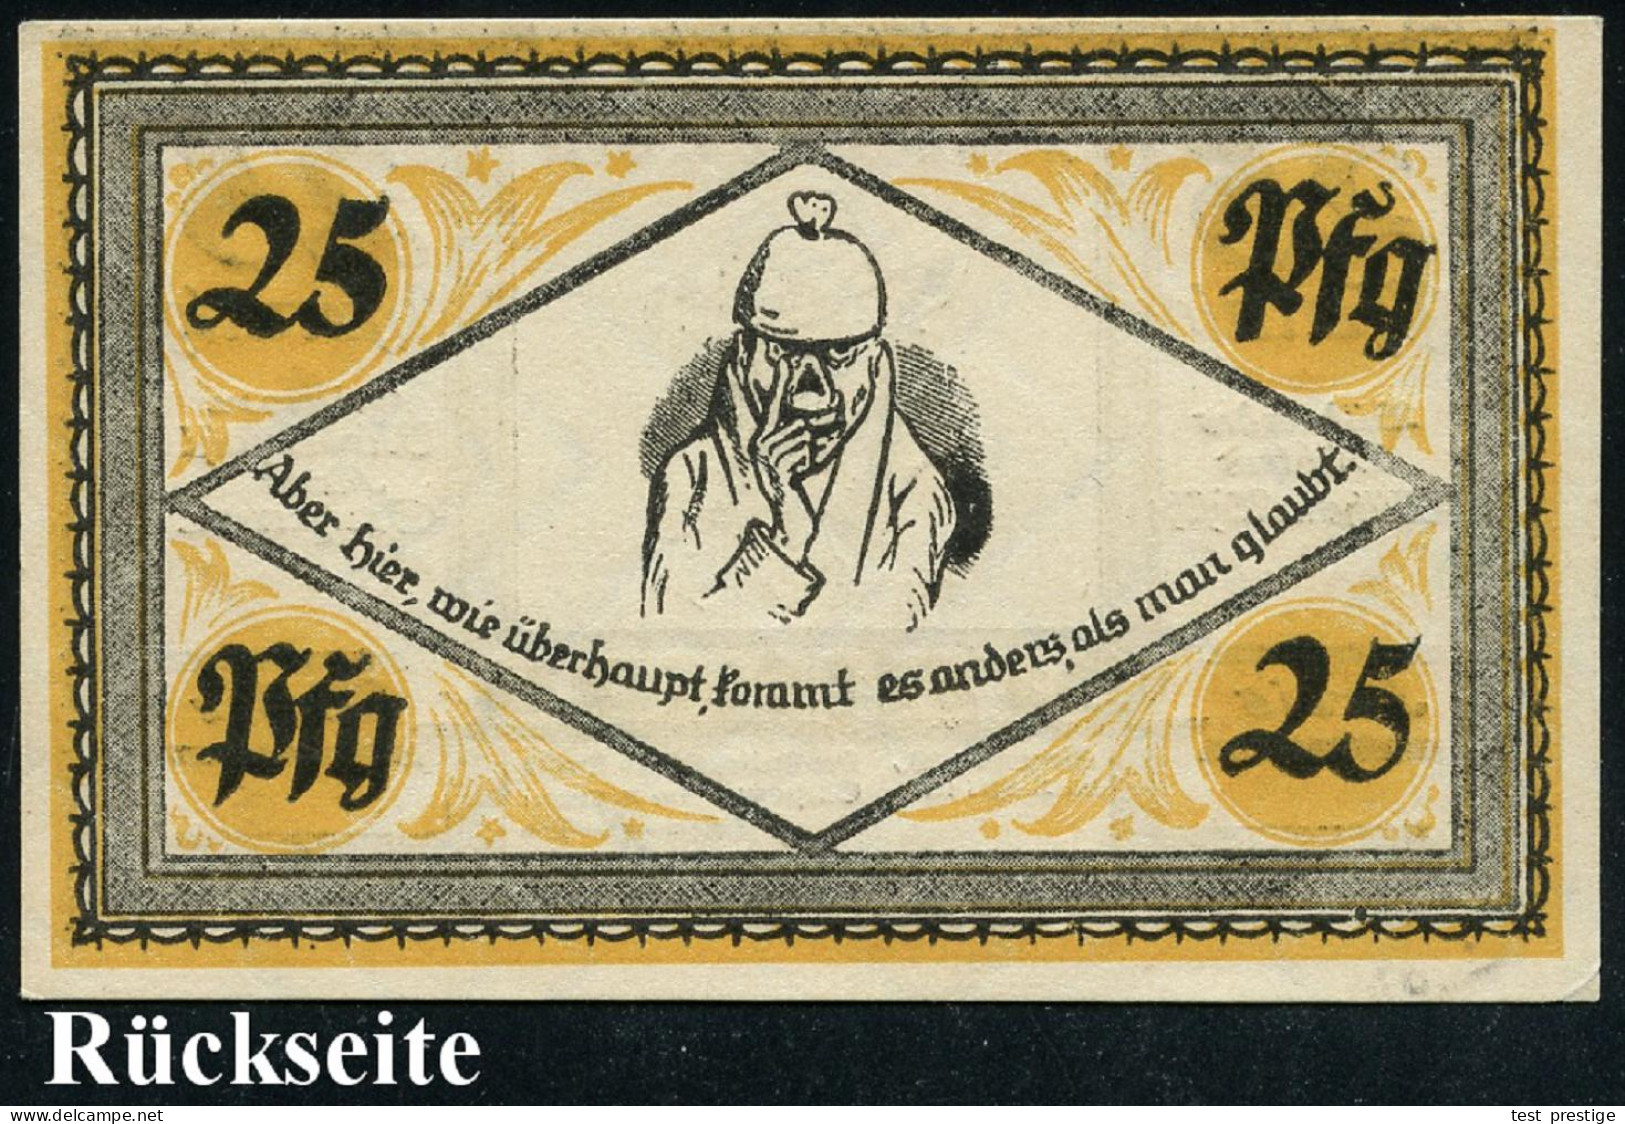 Stolzenau 1921 (Apr.) Infla-Notgeldschein 25 Pf. Mit Portrait Von Wilh. Busch (Selbstportrait Etc.) Bankfrisch - DEUTSCH - Escritores